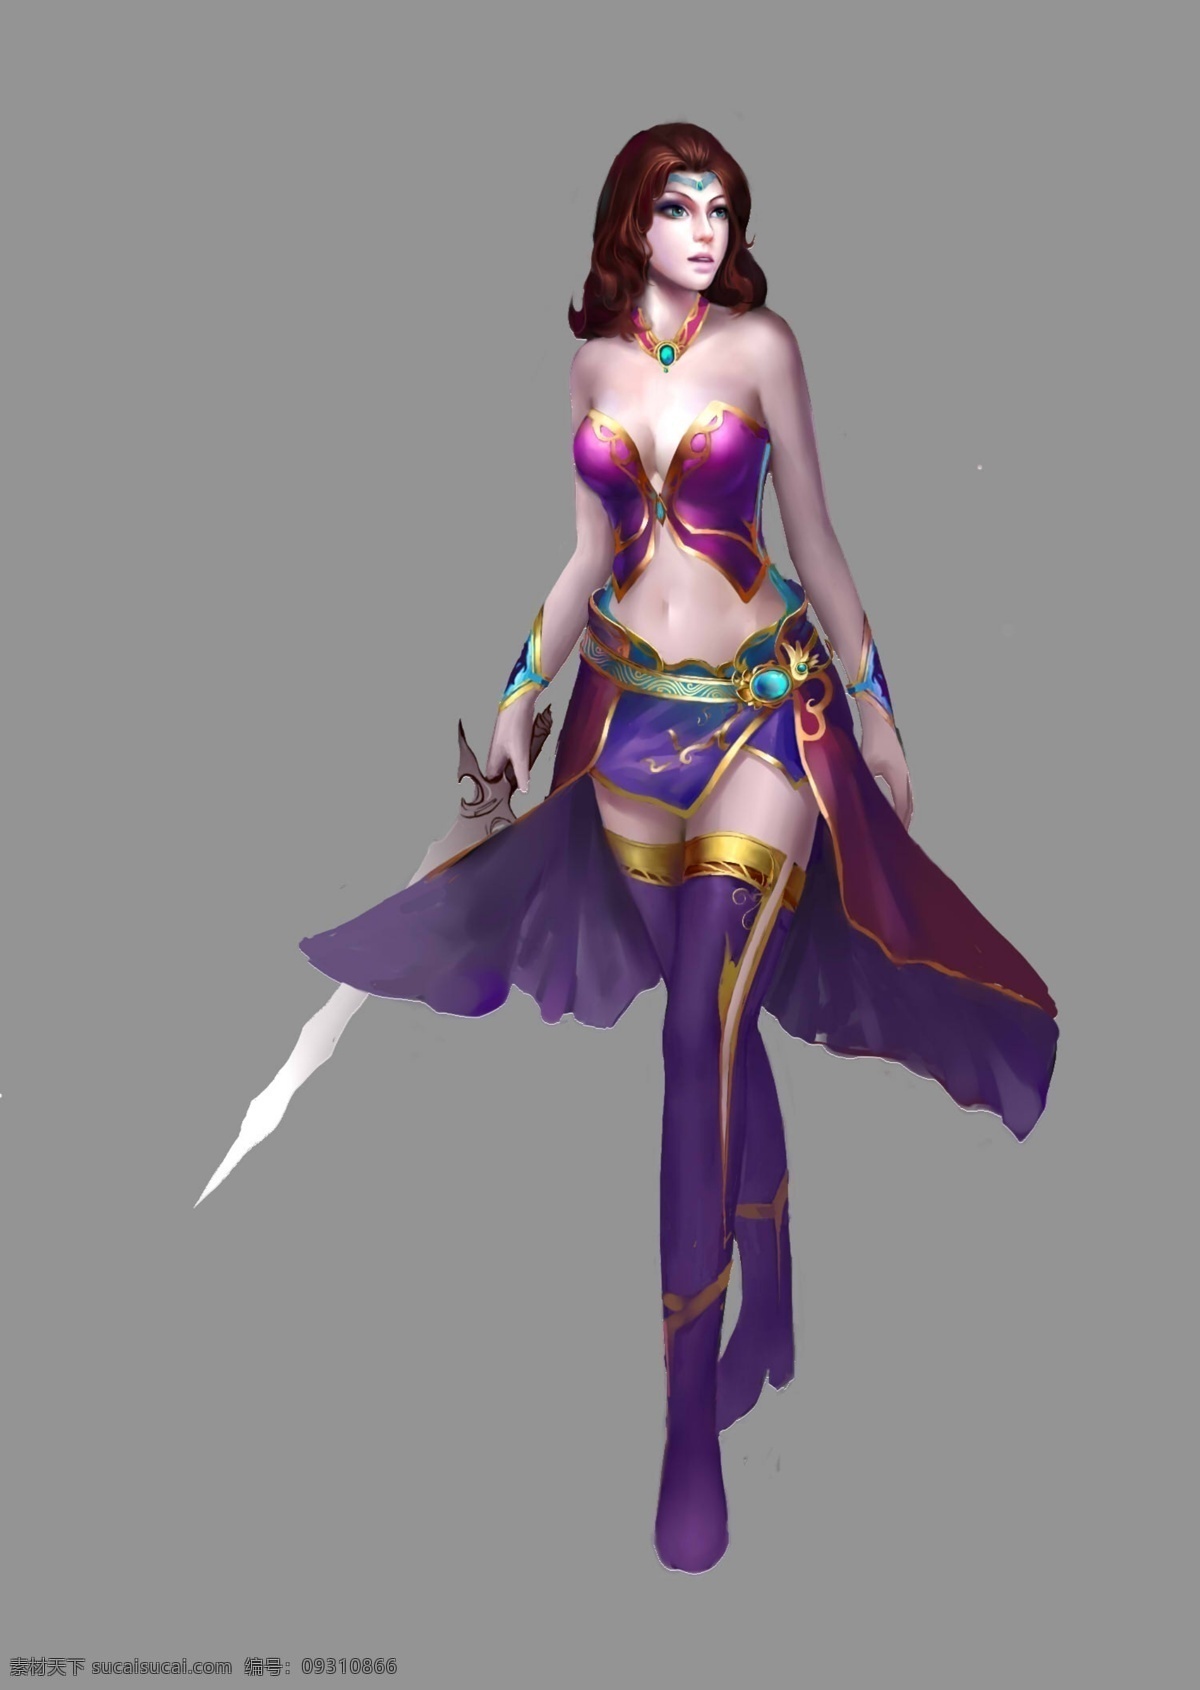 紫衣美女 游戏 游戏角色 游戏美女 游戏原画 游戏设定 游戏素材 美腿 性感 高挑 长发 紫衣 剑 分层 源文件